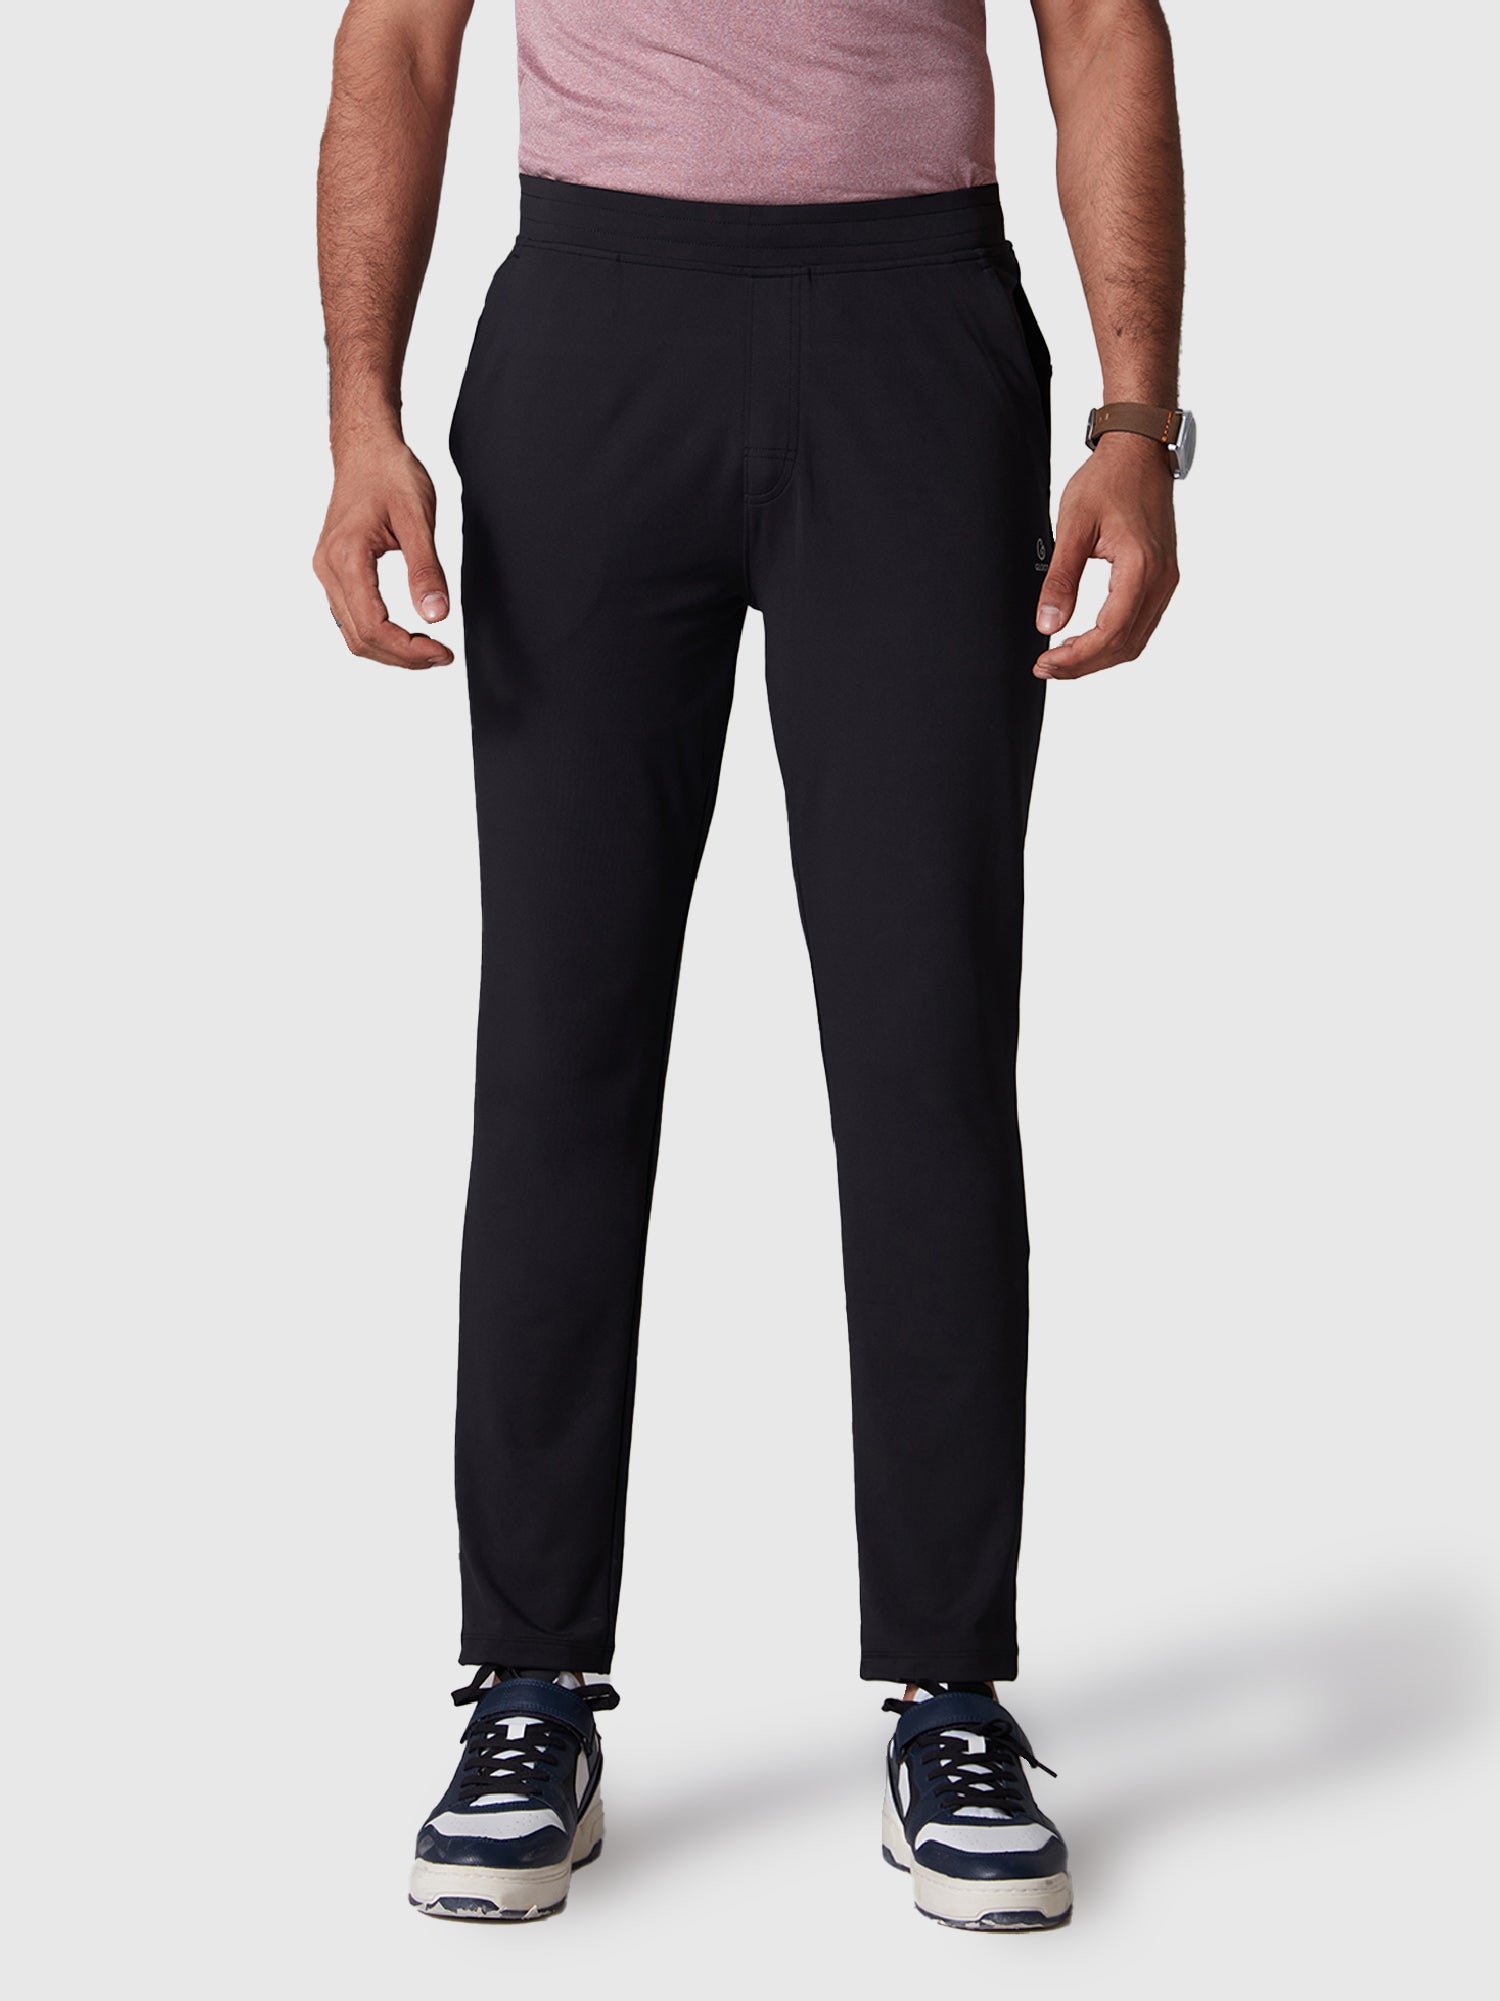 Cliths Black Formal Trouser For Mens Slim Fit Black Pants For Men Slim Fit